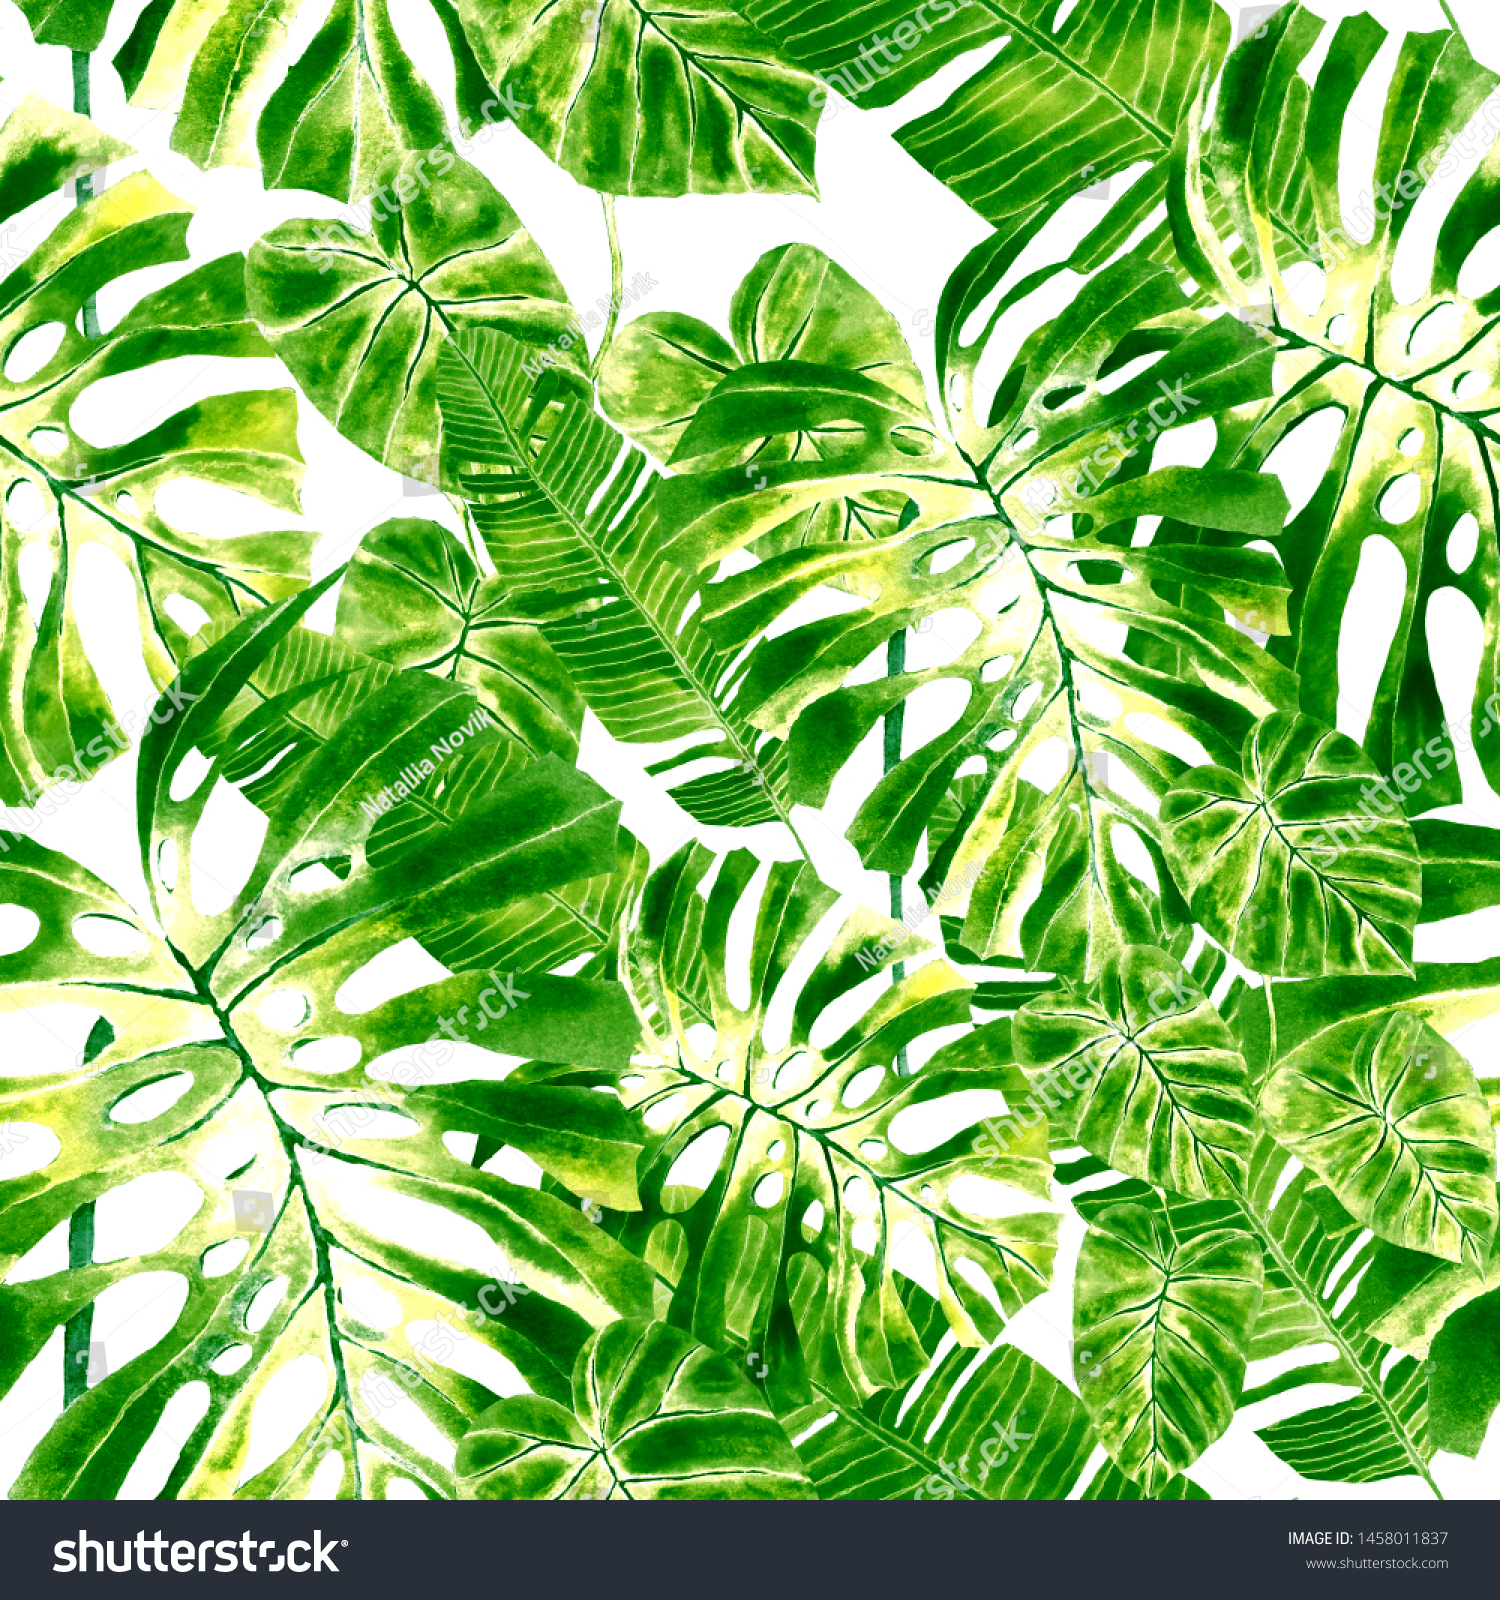 「熱帯モンステラ、ヤシの葉、緑の葉のシームレスなパターン背景 